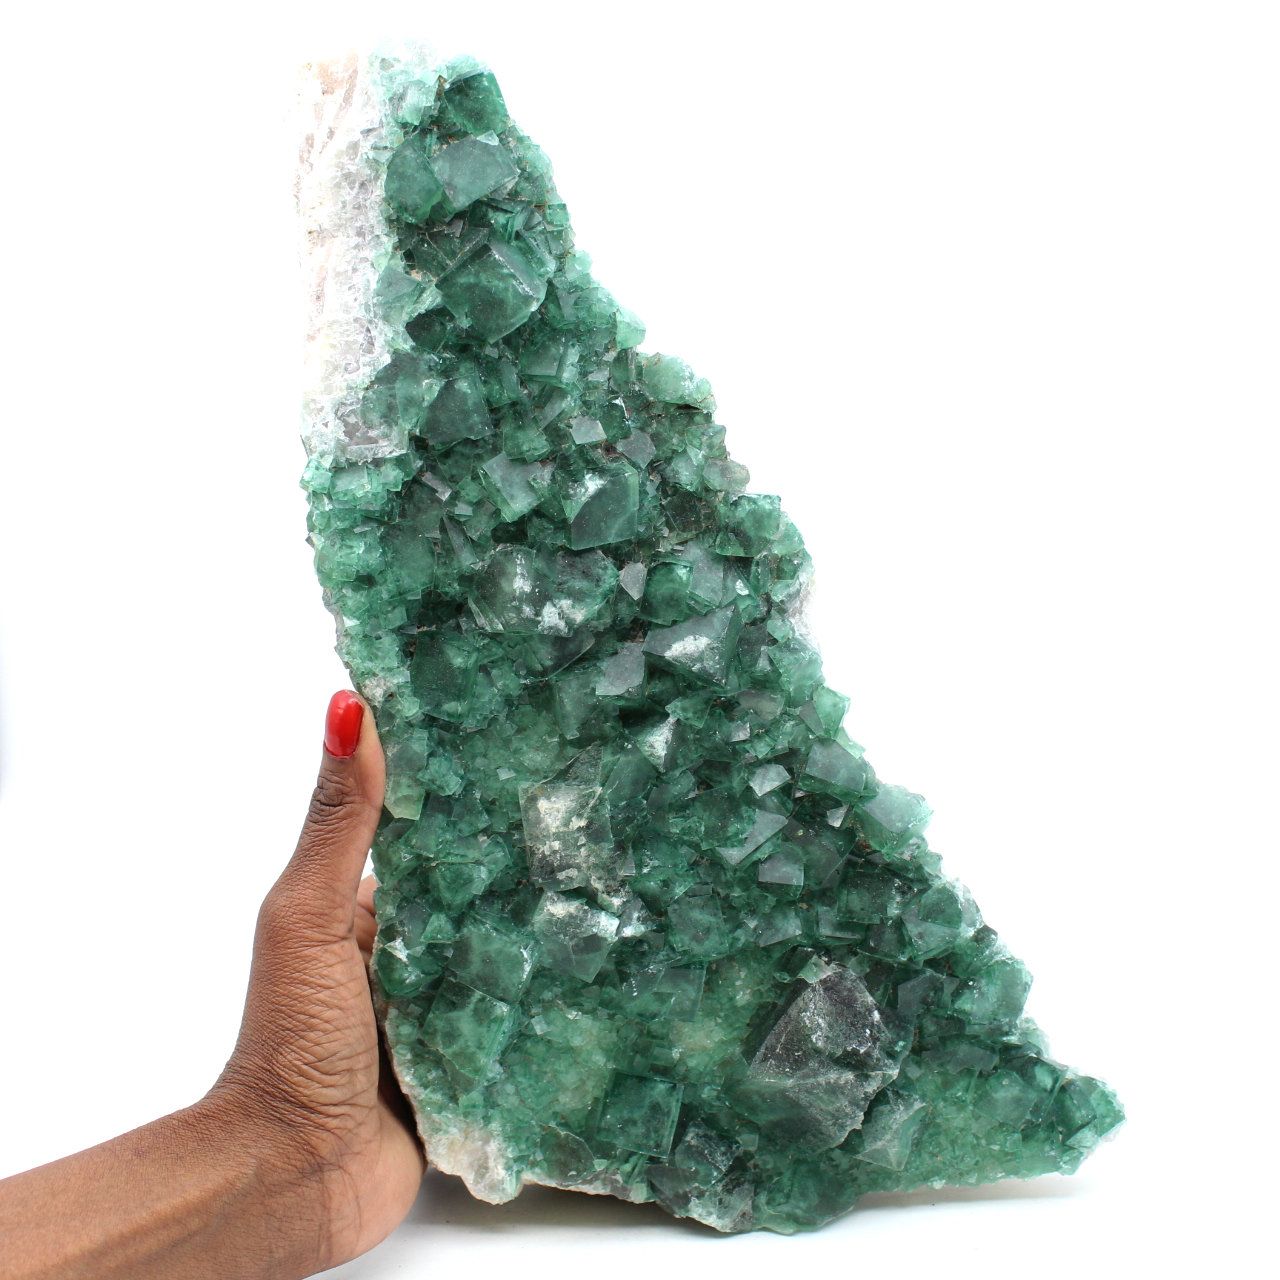 Grüner Fluorit aus Madagaskar von fast 4 Kilo